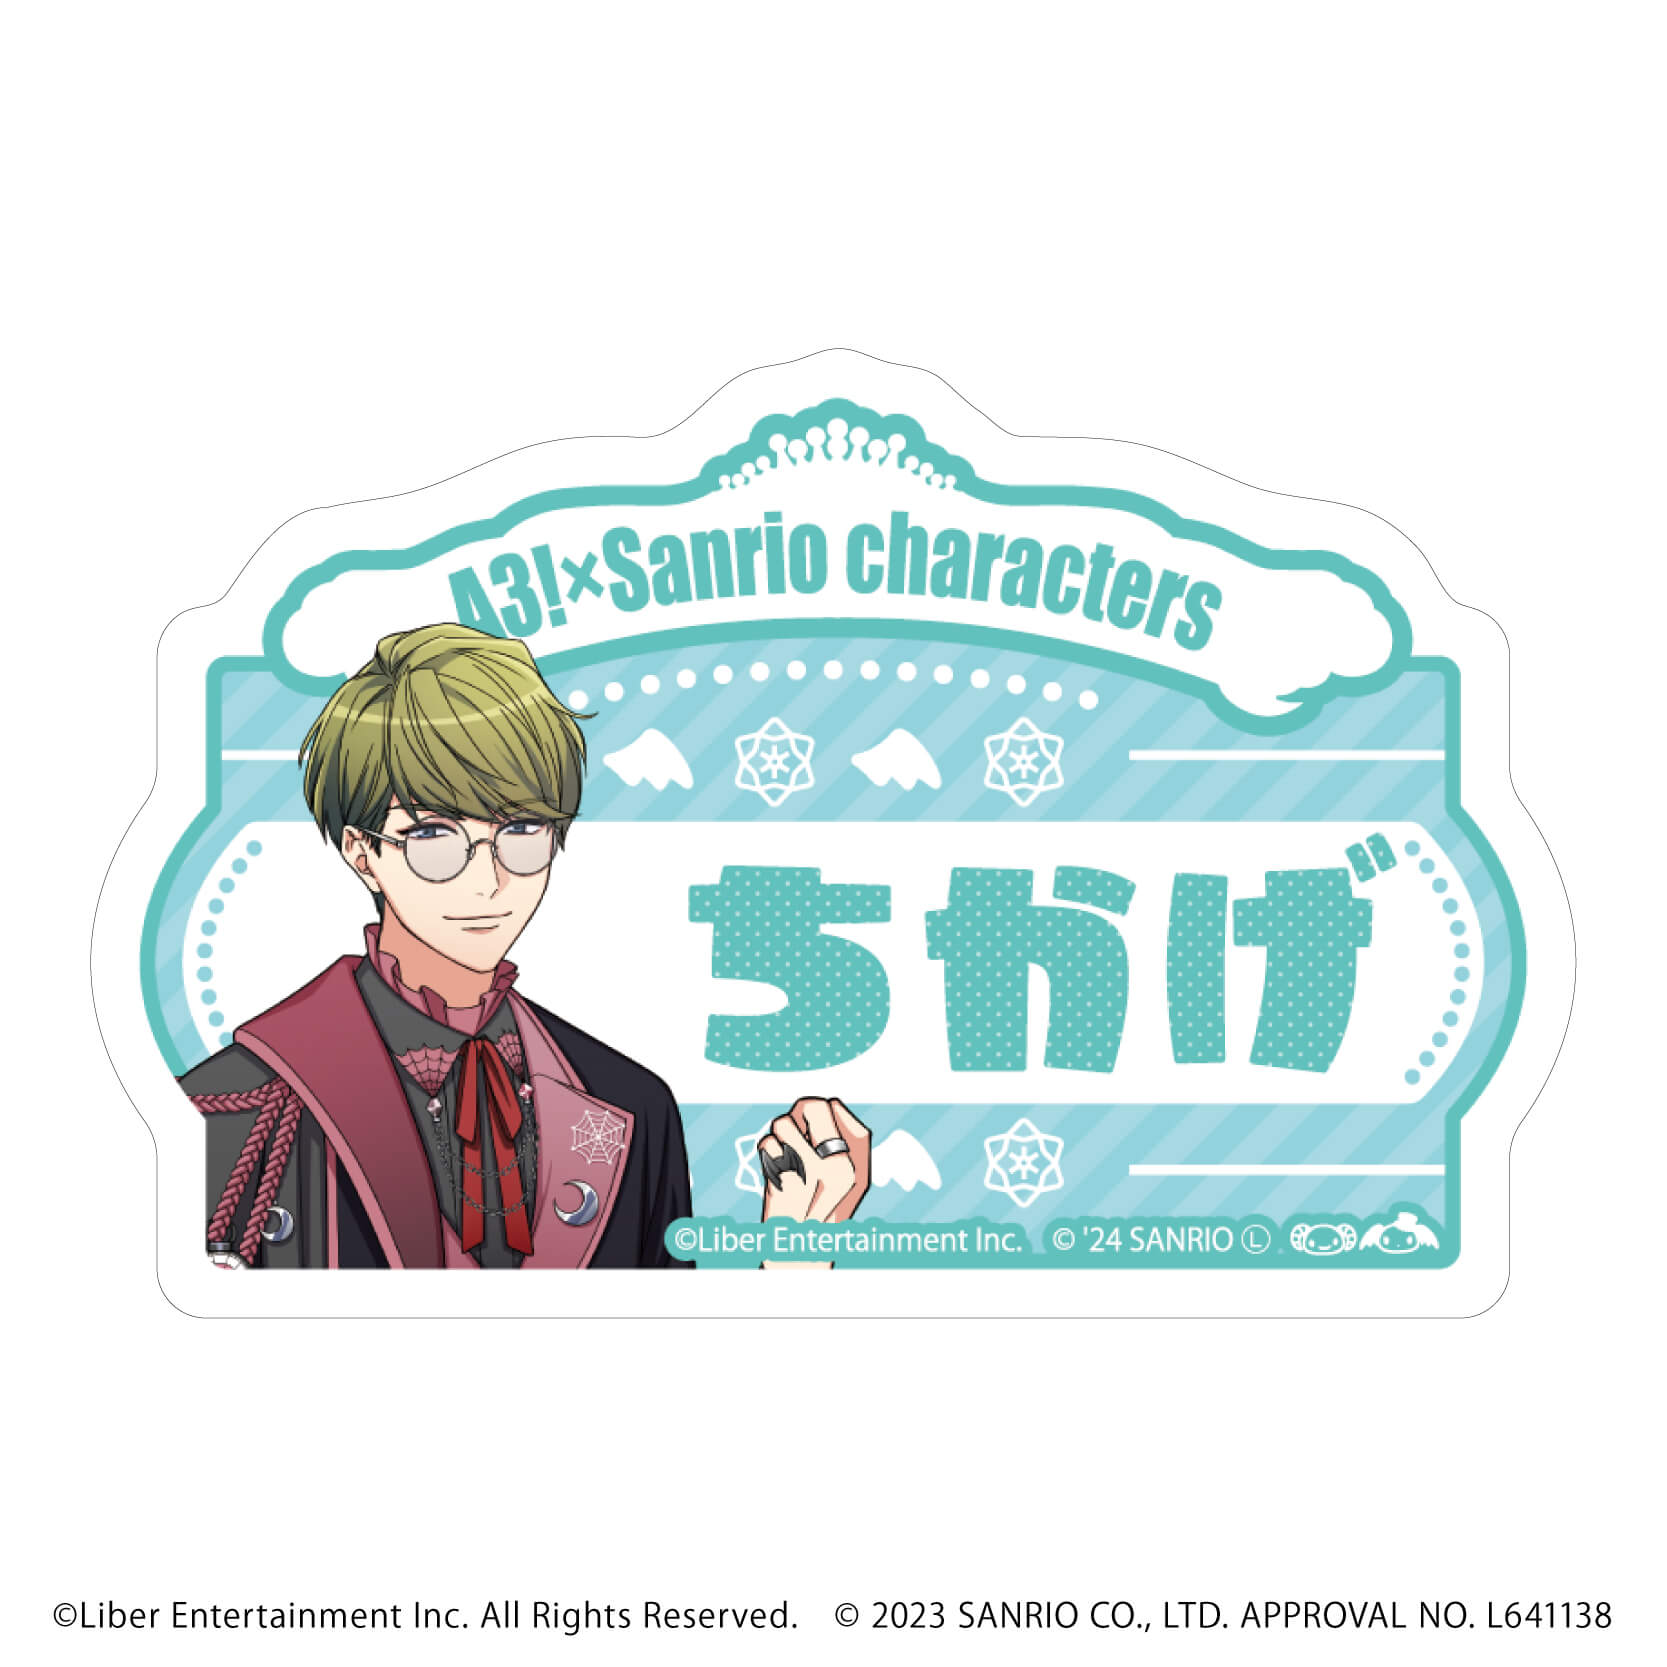 おなまえプレートバッジ「A3!×Sanrio characters」03/S＆S コンプリートBOX(全12種)(公式イラスト)